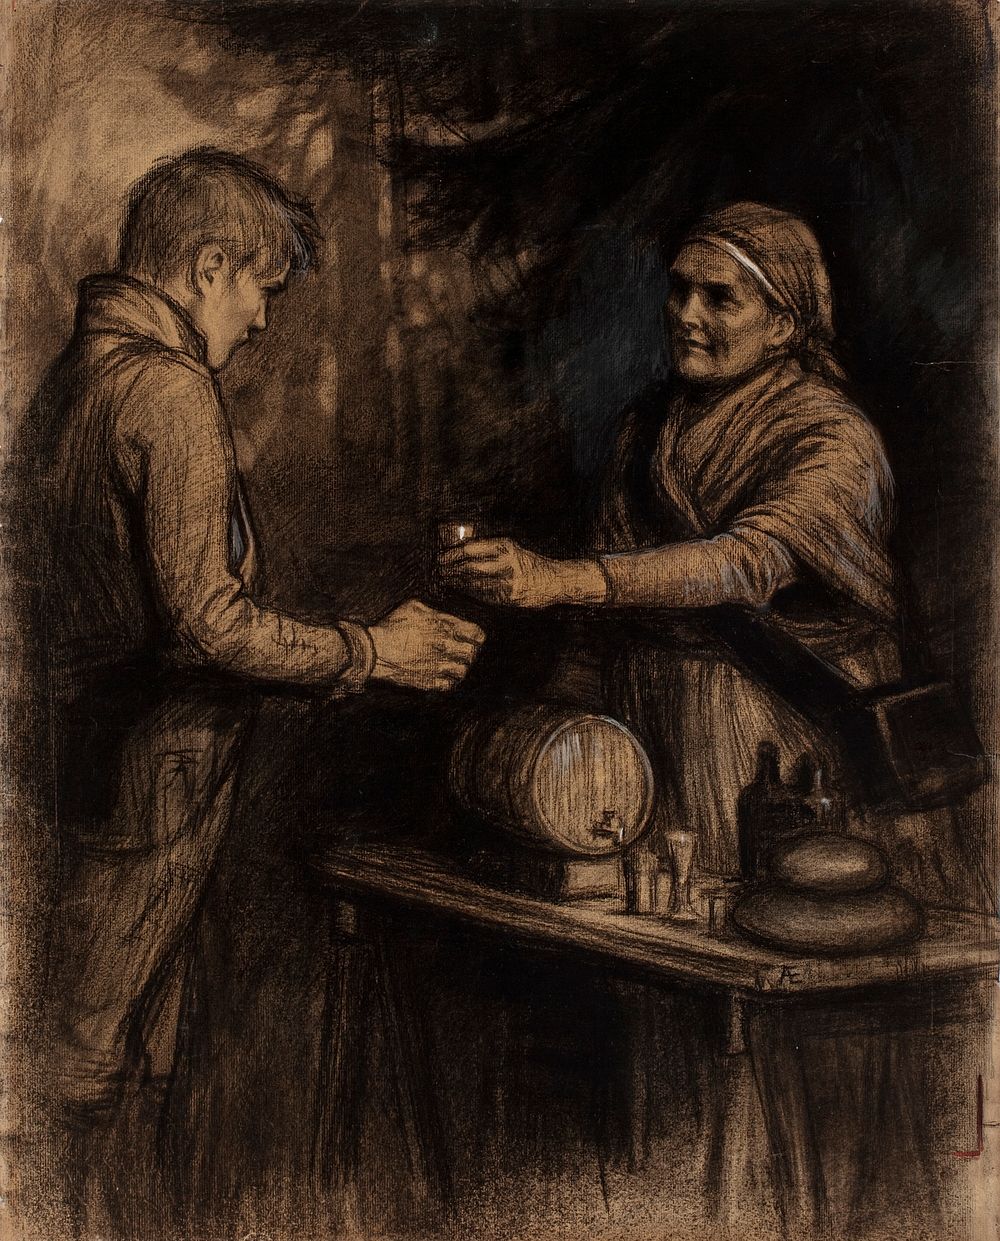 "ja saapunehelle lotta se nyt täpötäytehen soi pikarin", vänrikki stoolin tarinain kuvitusta, 1897 - 1900 by Albert Edelfelt